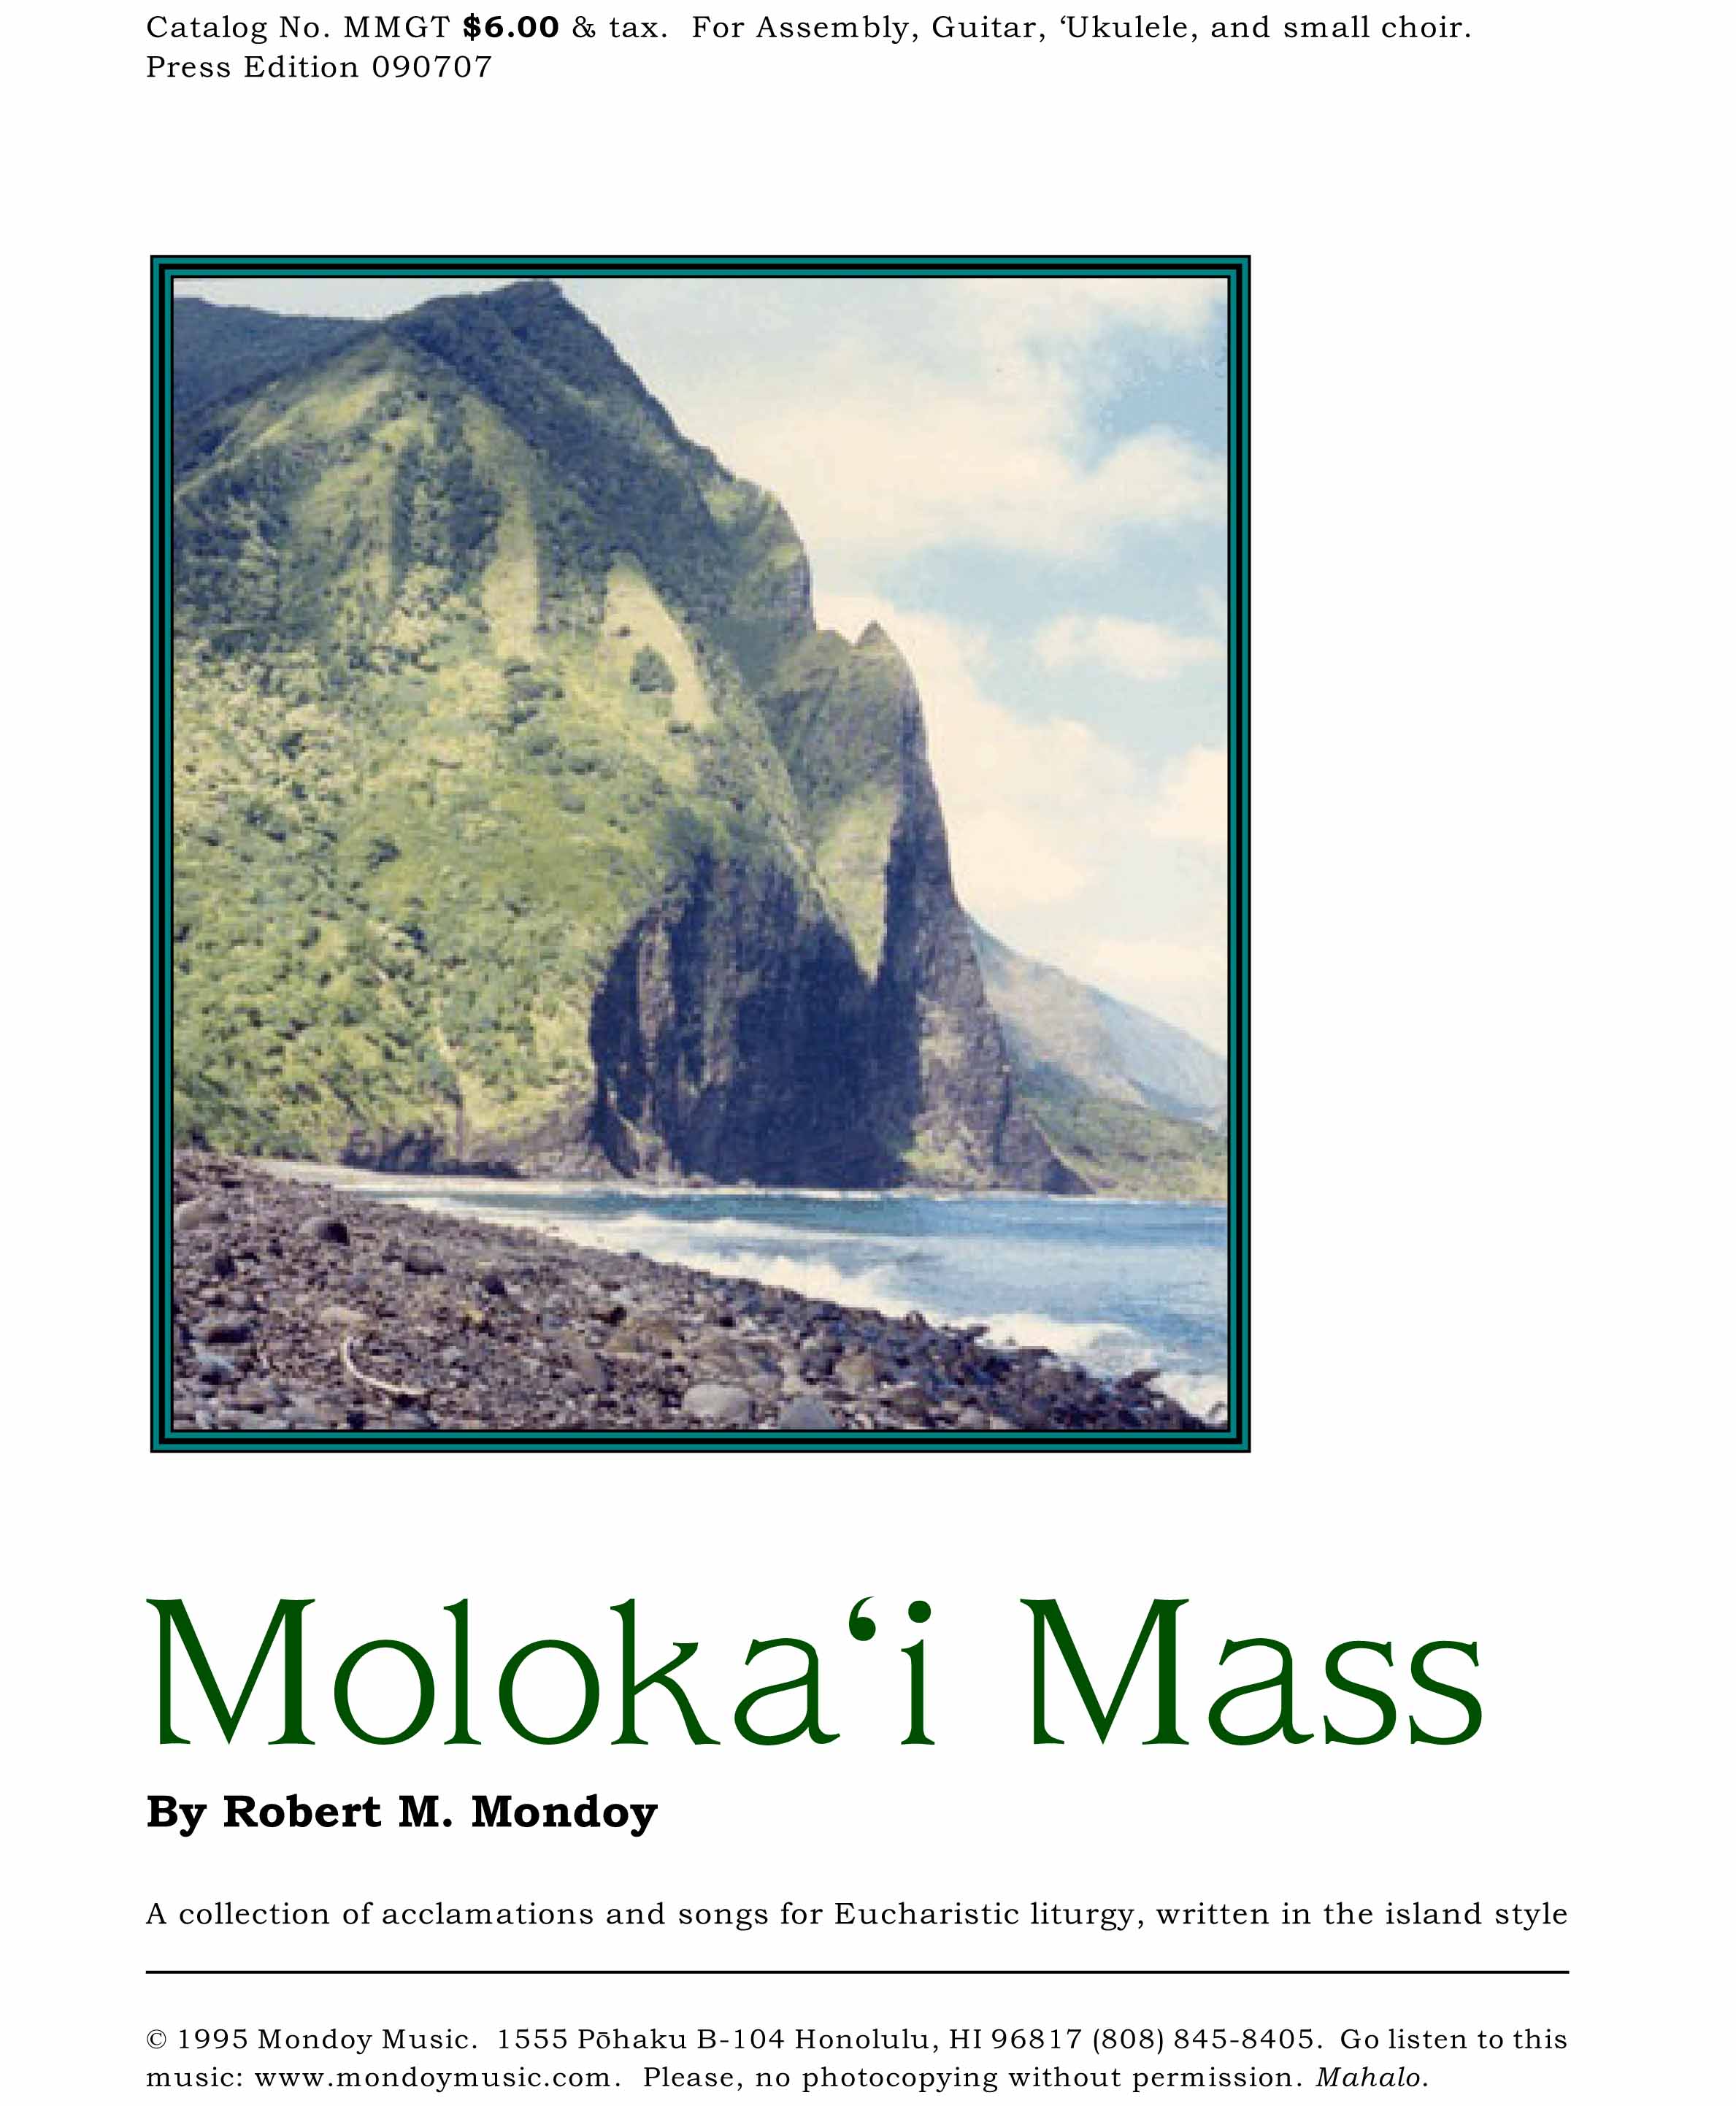 Moloka'i Mass